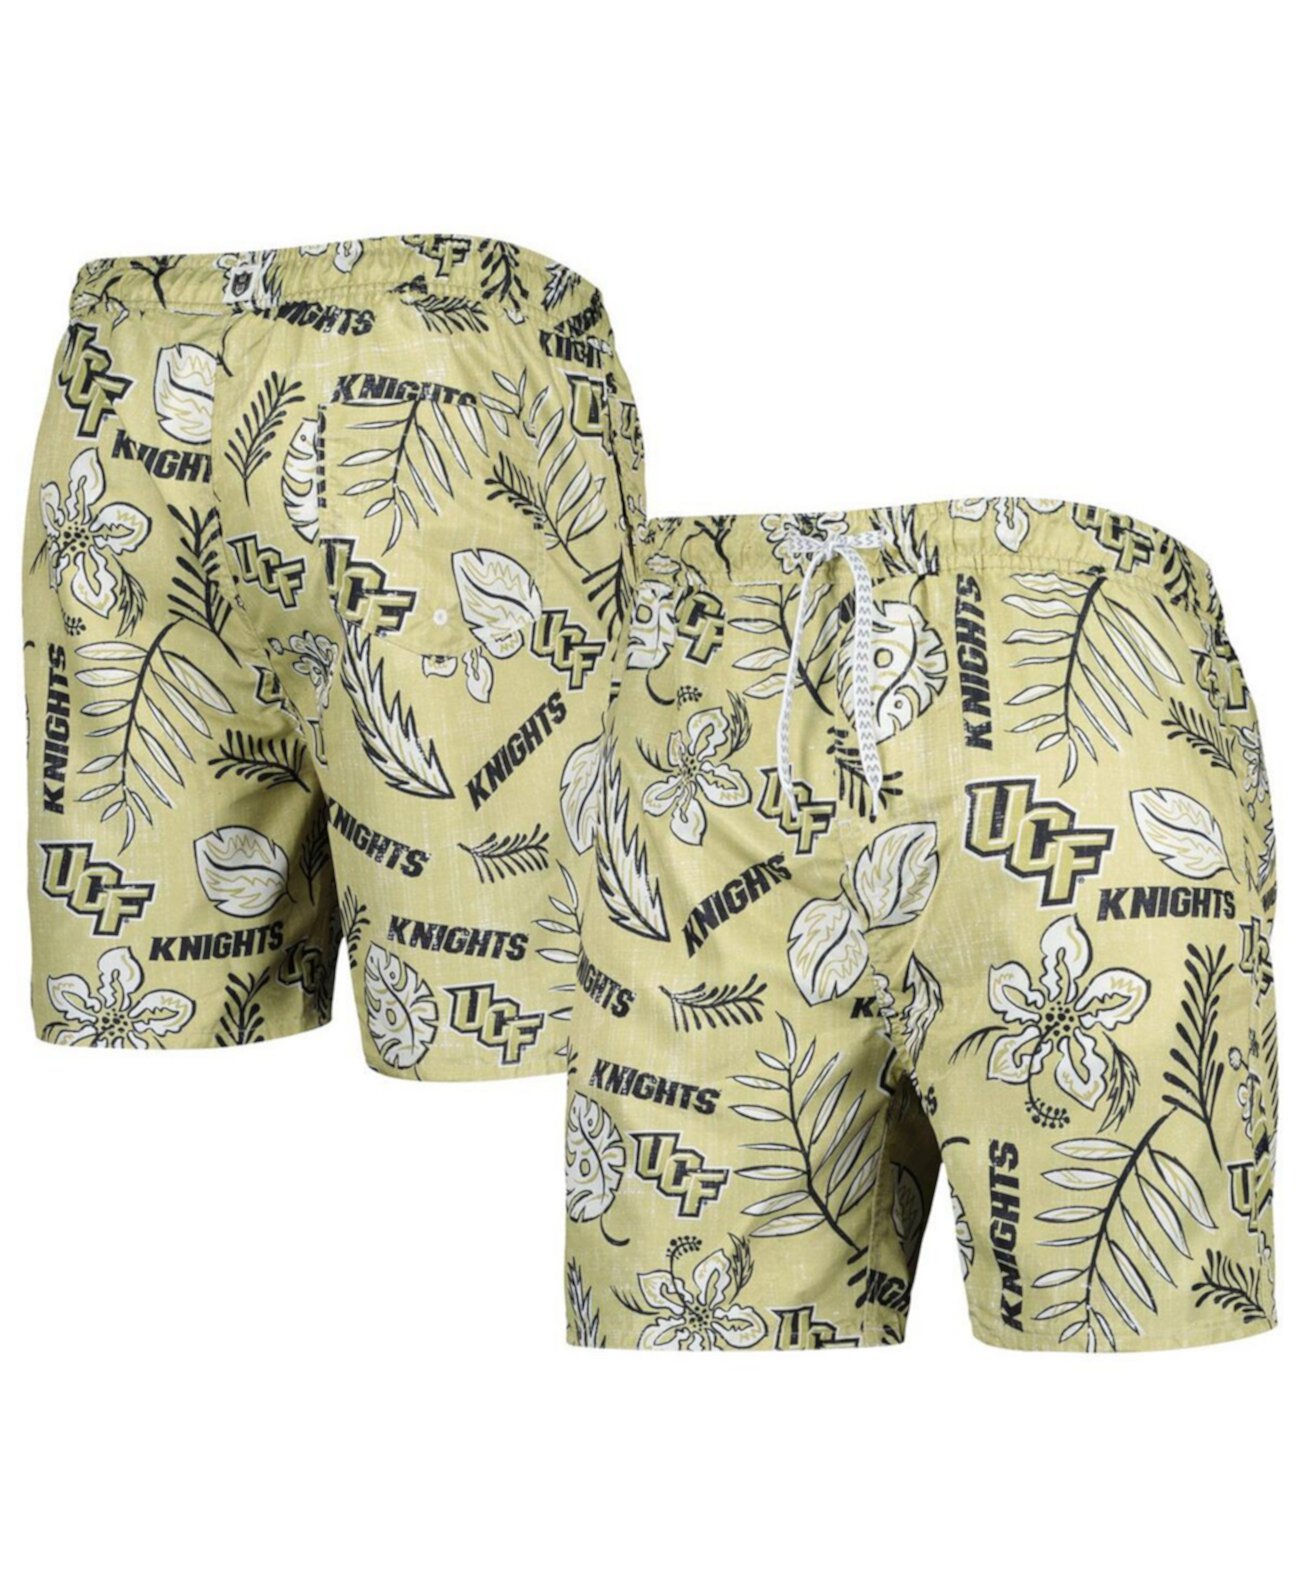 Мужские плавки цвета хаки UCF Knights в винтажном стиле с цветочным принтом Wes & Willy